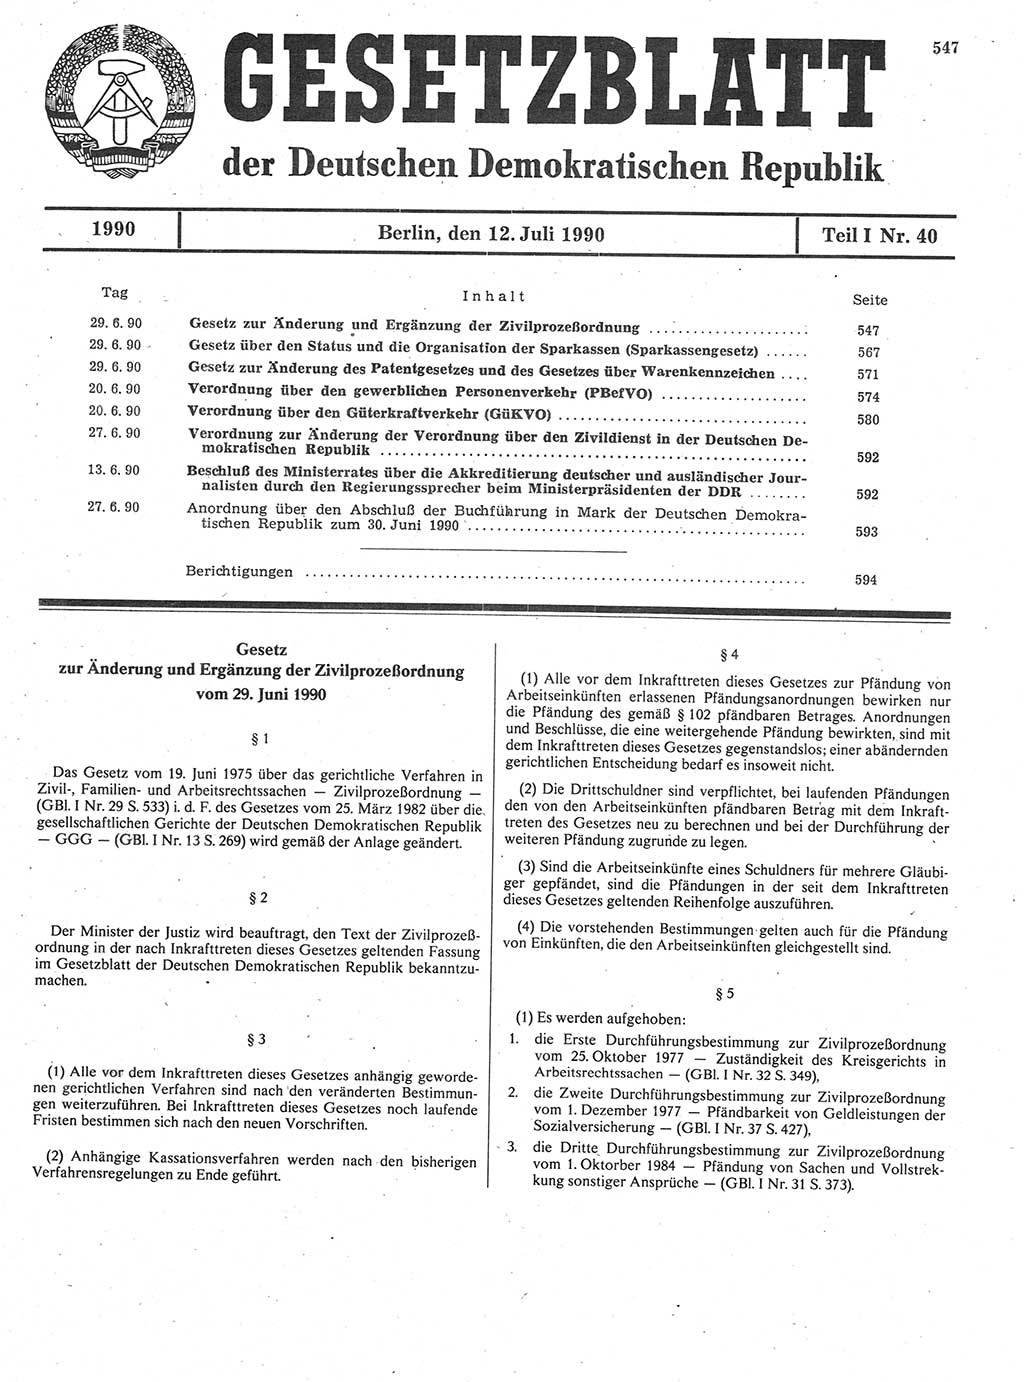 Gesetzblatt (GBl.) der Deutschen Demokratischen Republik (DDR) Teil Ⅰ 1990, Seite 547 (GBl. DDR Ⅰ 1990, S. 547)